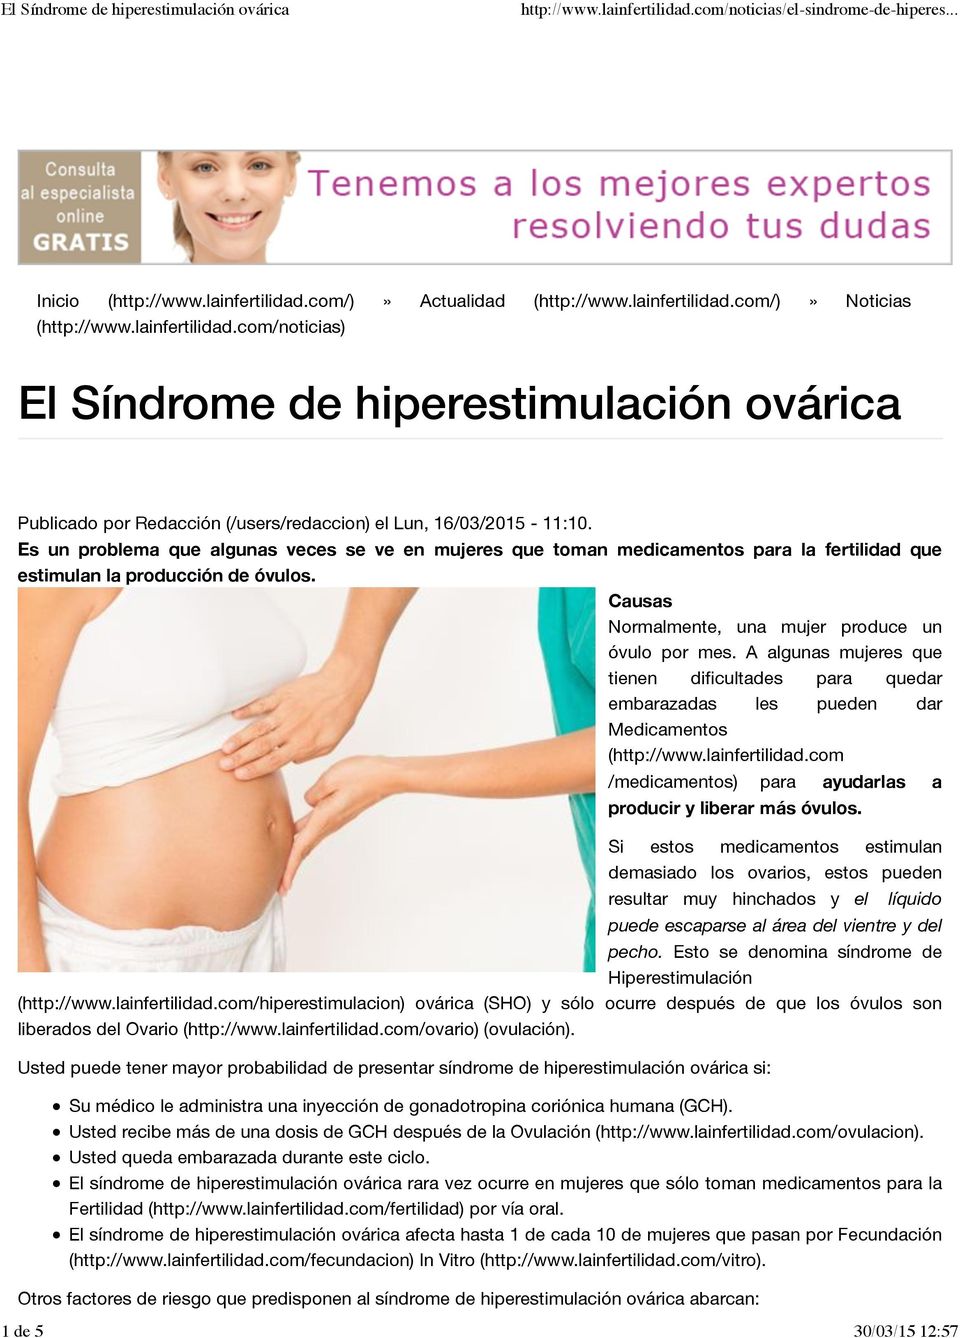 A algunas mujeres que tienen dificultades para quedar embarazadas les pueden dar Medicamentos (http://www.lainfertilidad.com /medicamentos) para ayudarlas a producir y liberar más óvulos.